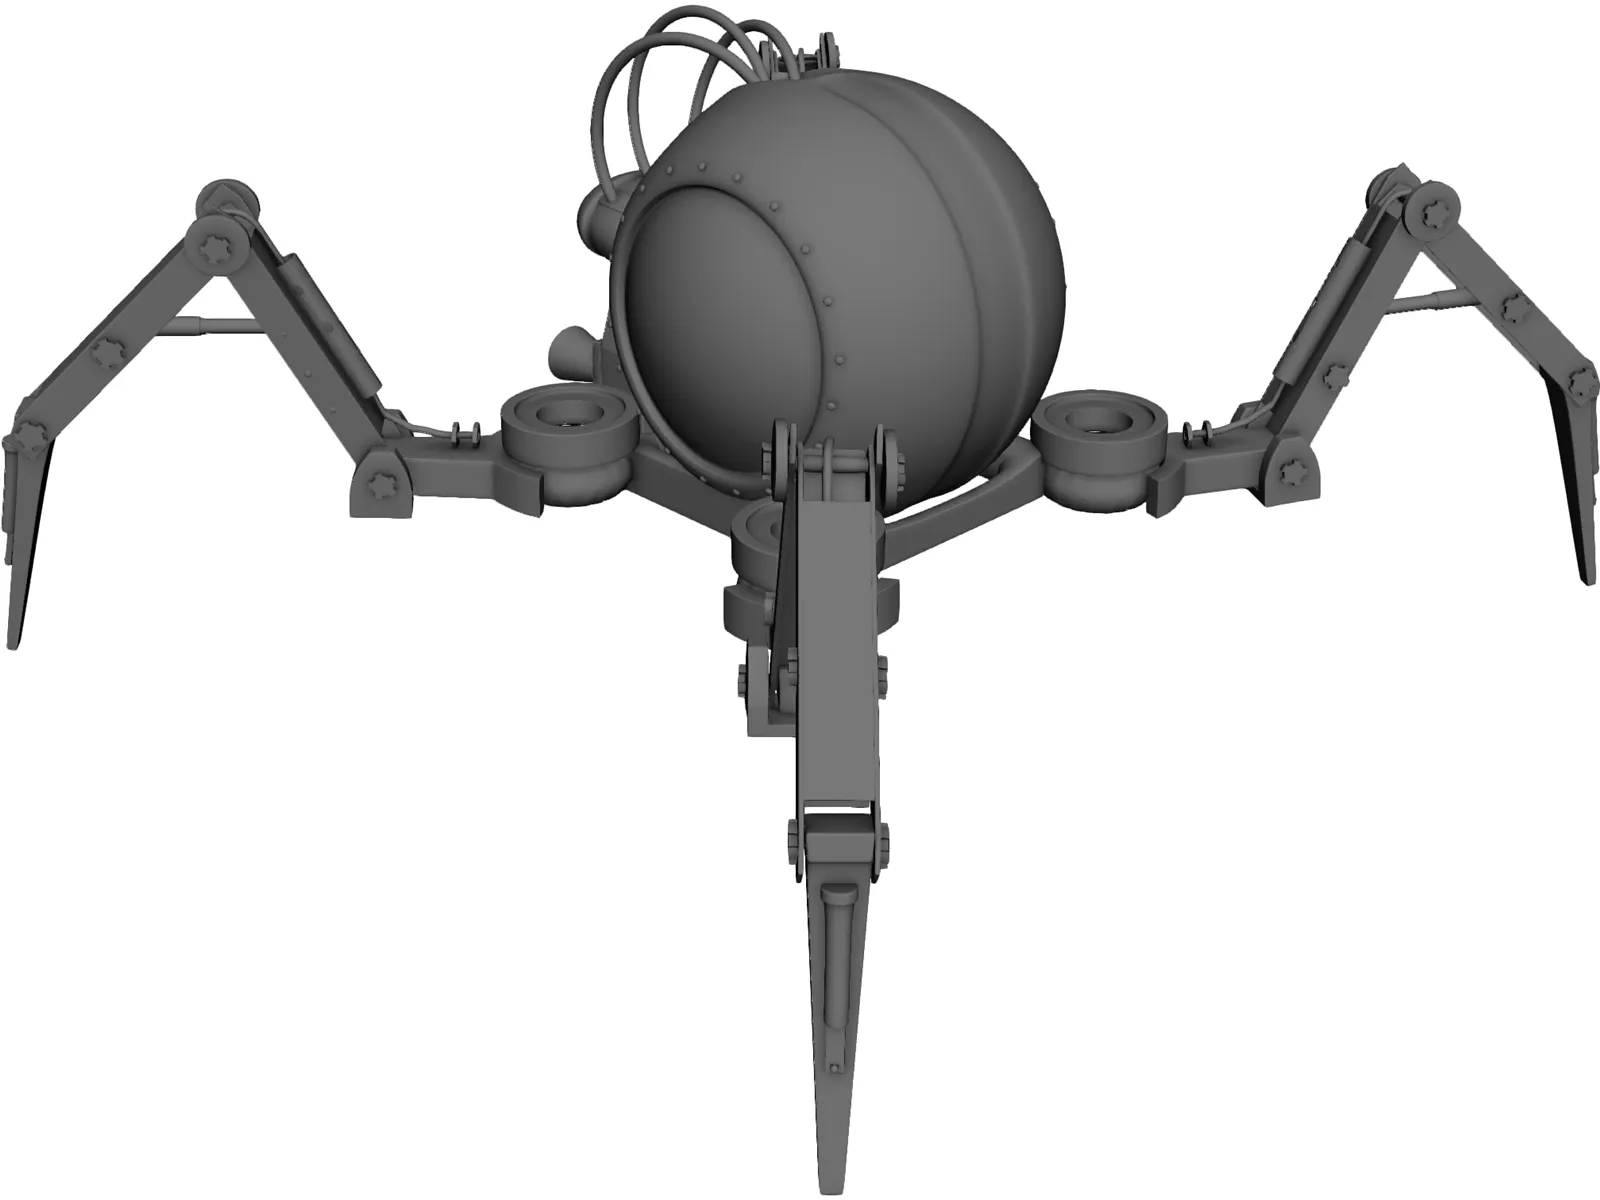 Spider Gwen modelo 3D in FBX, OBJ, MAX, 3DS, C4D 